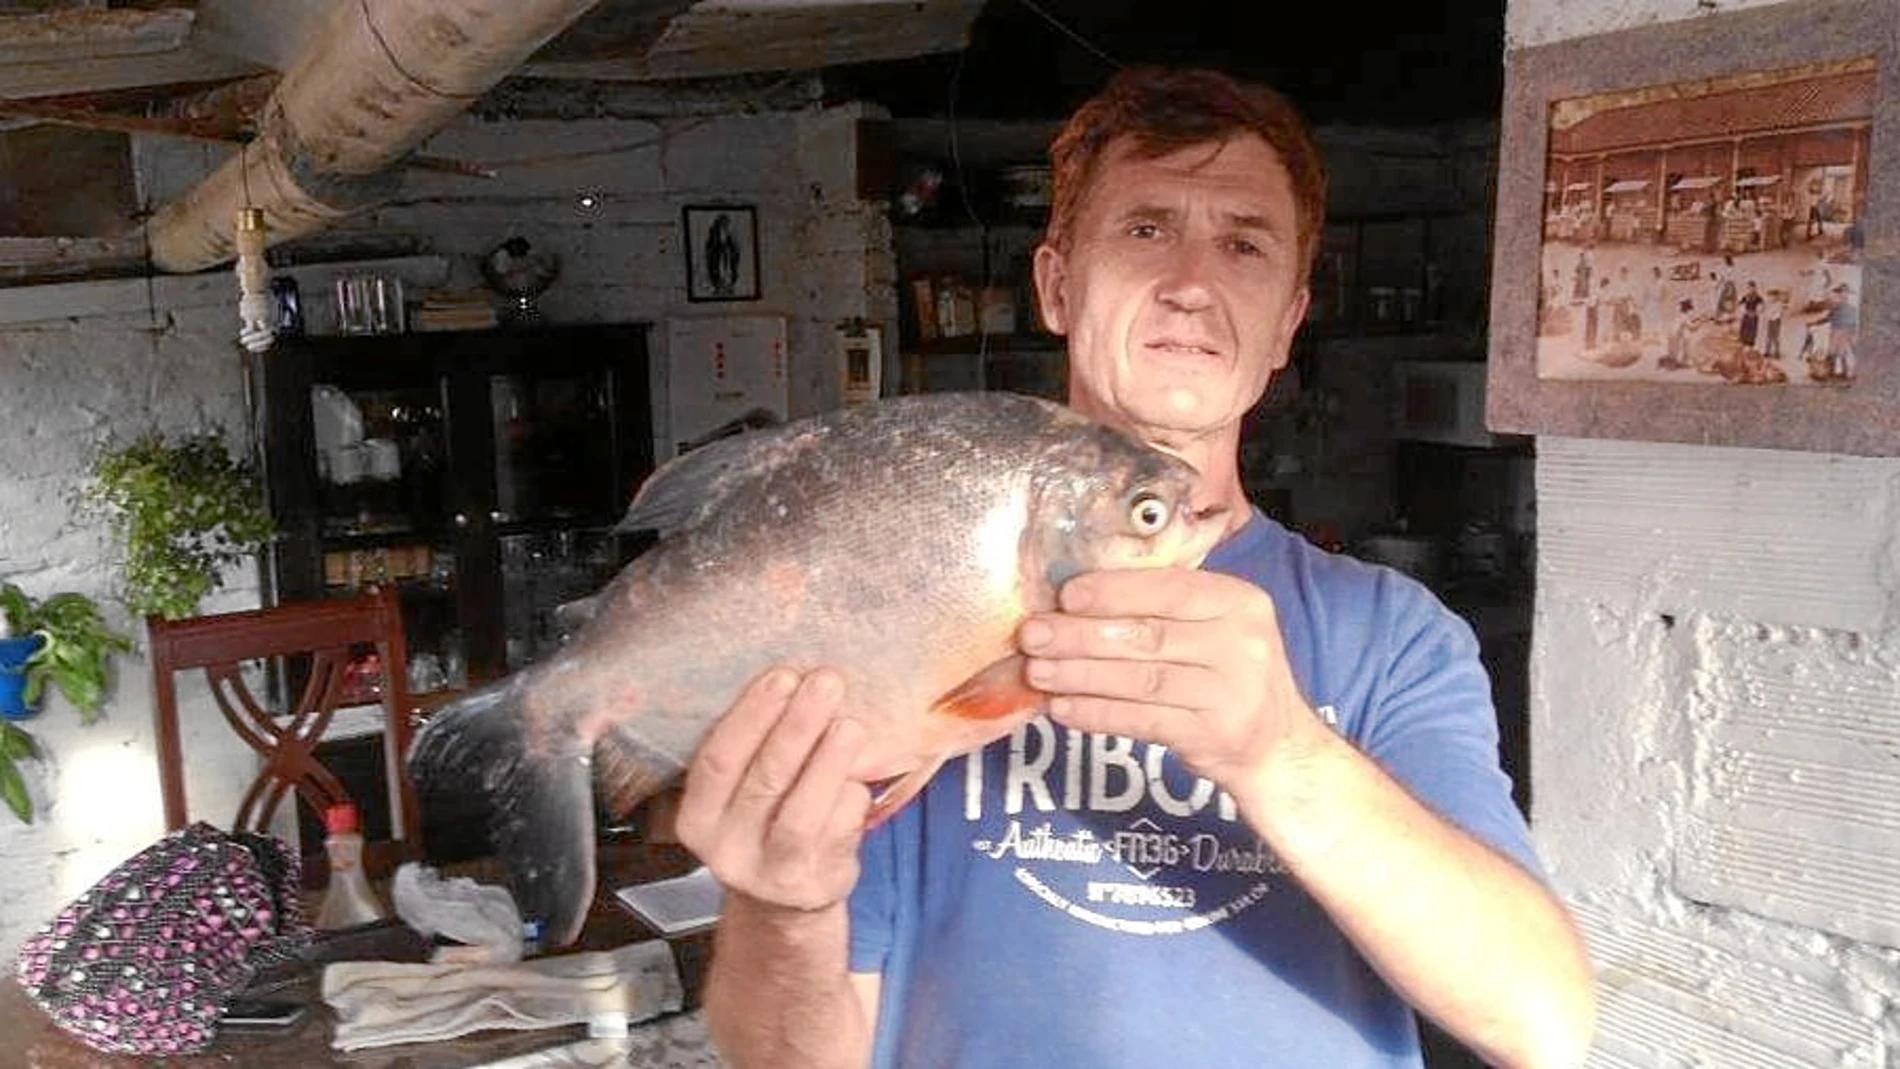 Magentí, de 60 años, compartía en su perfil de la red social Facebook numerosas fotos de pesca